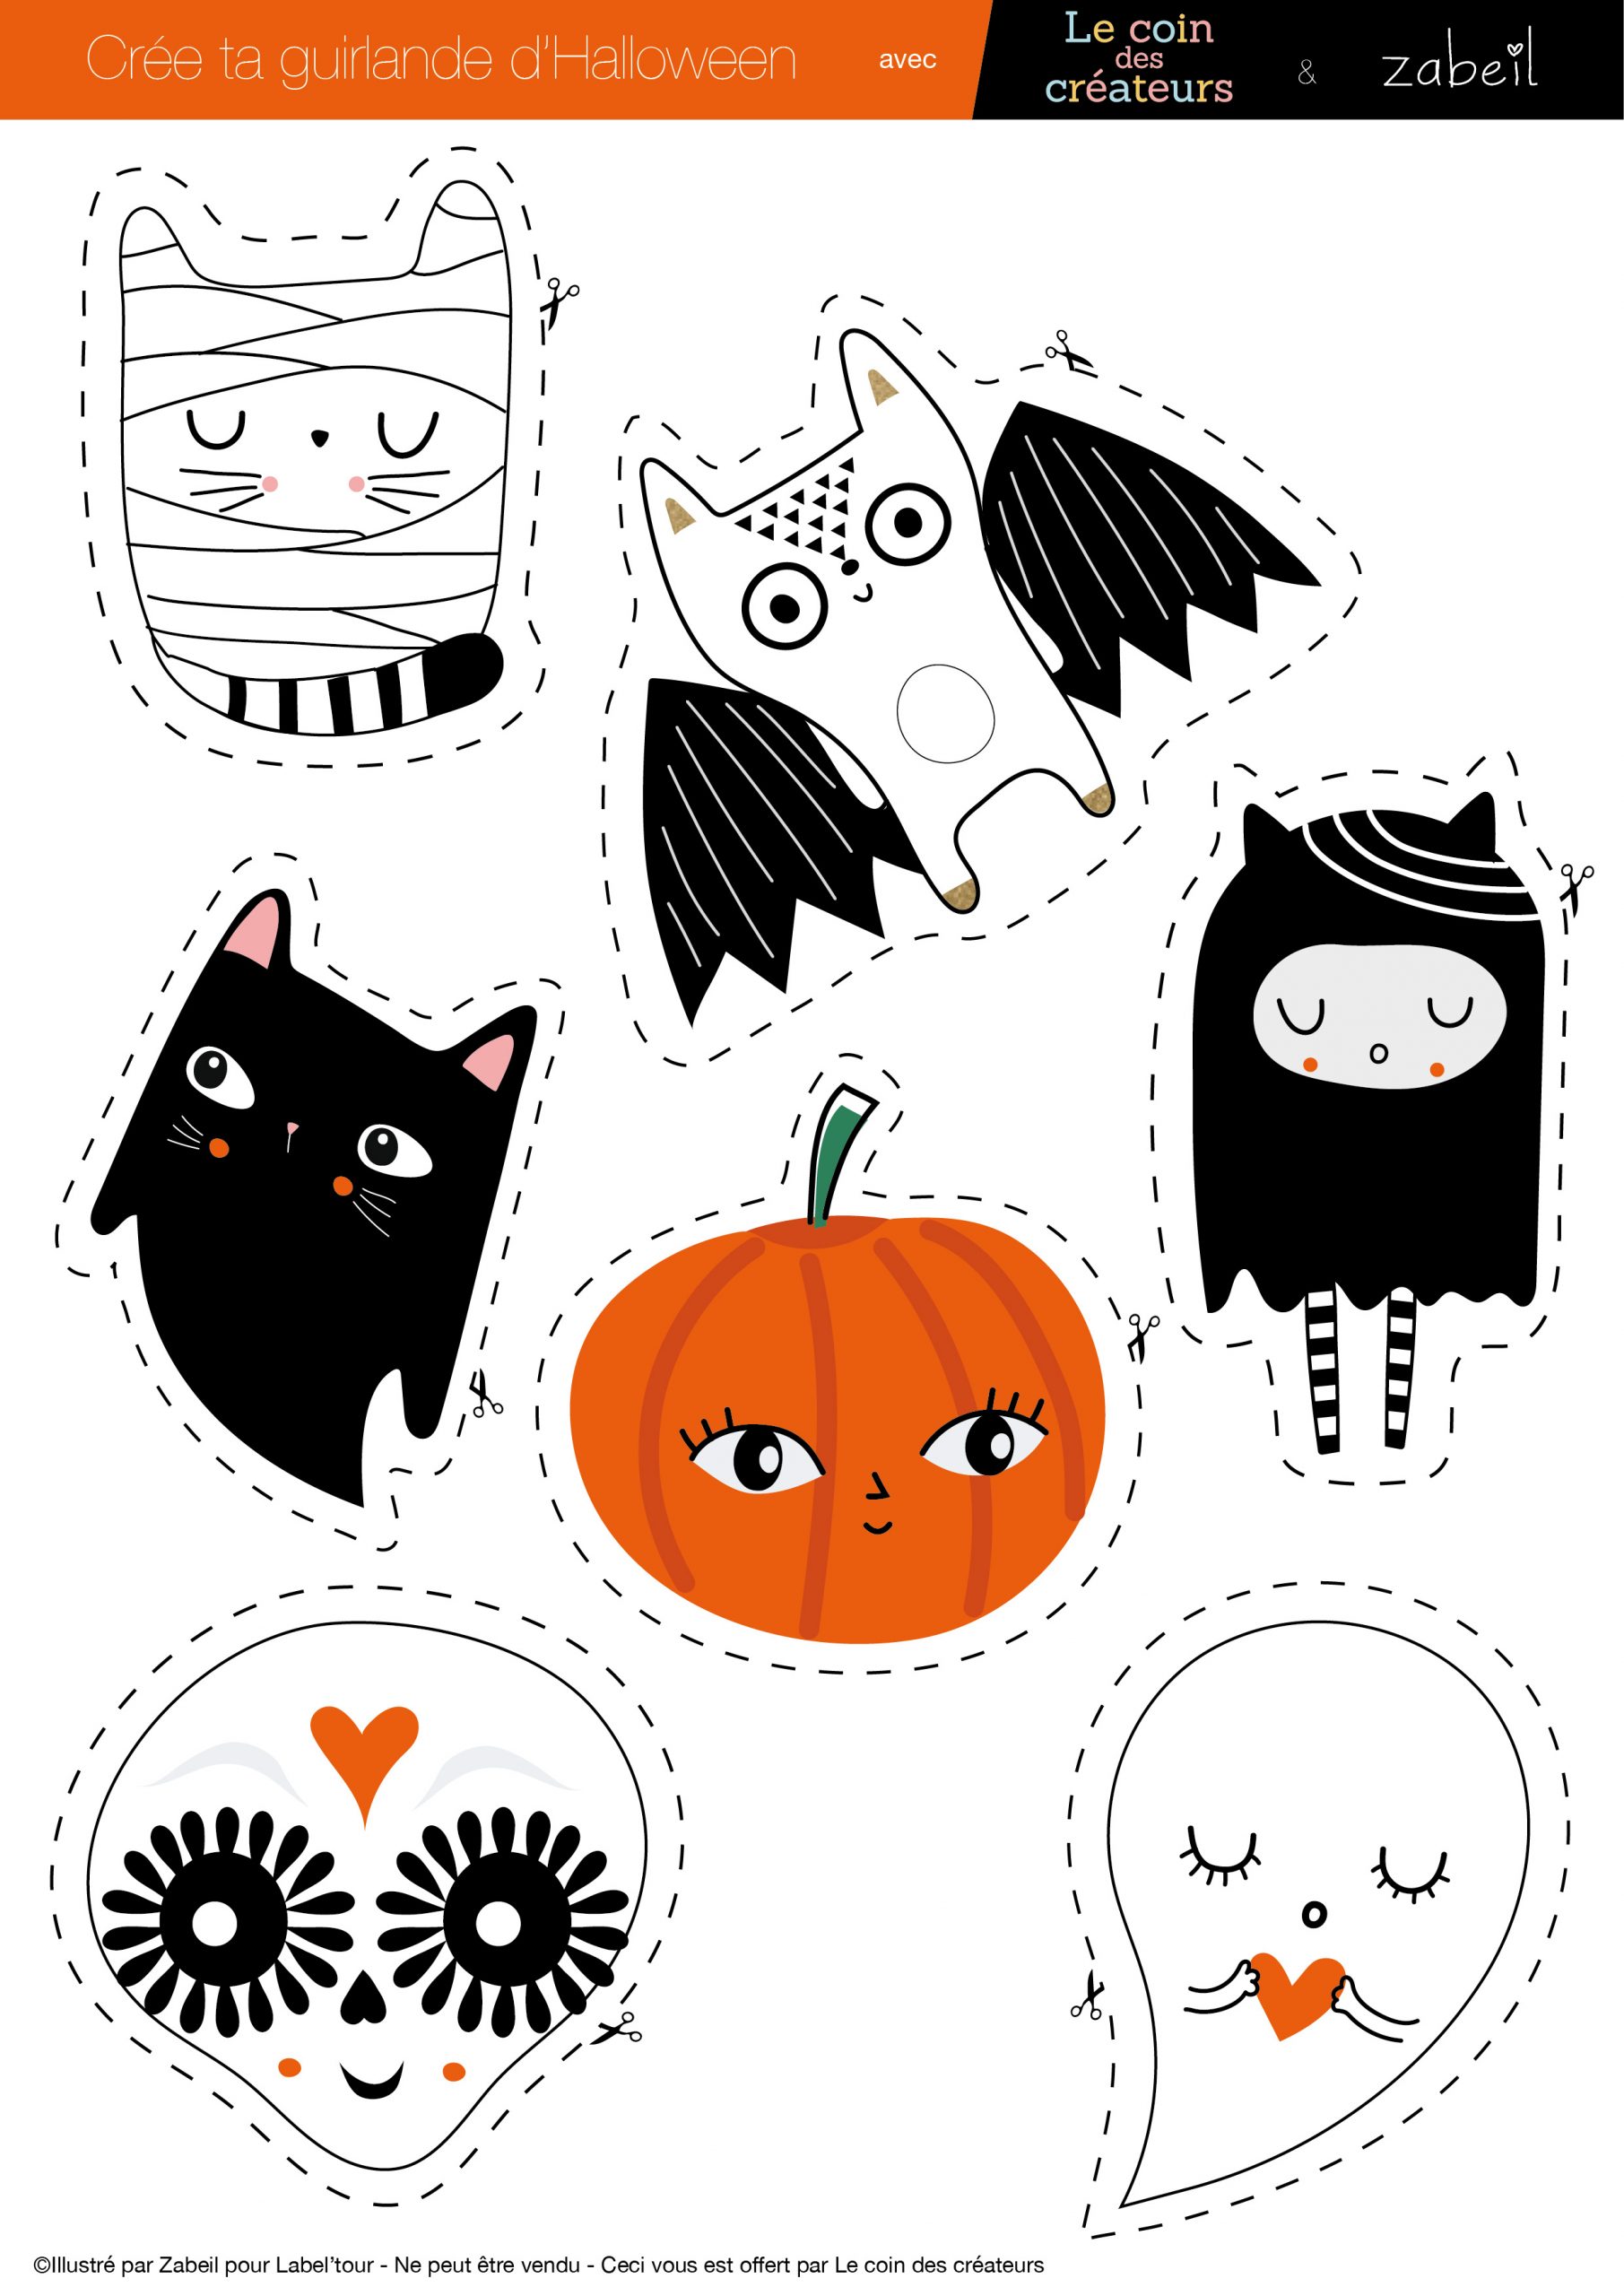 Créer Une Guirlande En Papier Pour Halloween Avec La Créatrice Zabeil avec Deco Halloween A Imprimer